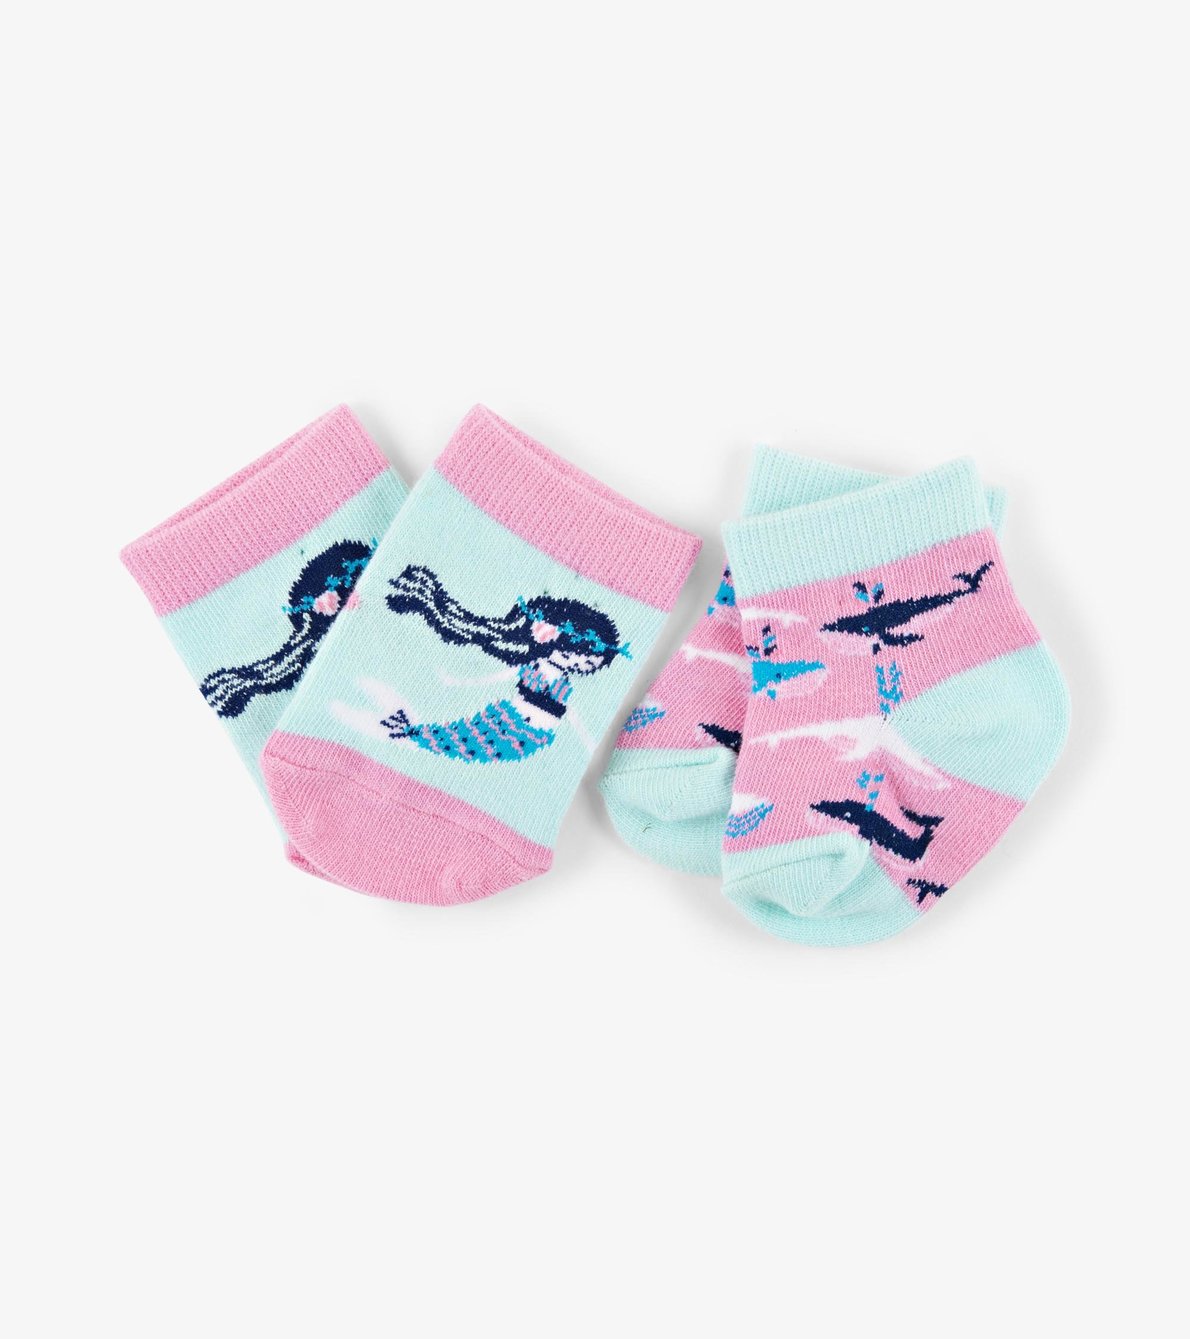 View larger image of Sweet Mermaid 2-Pack Baby Socks